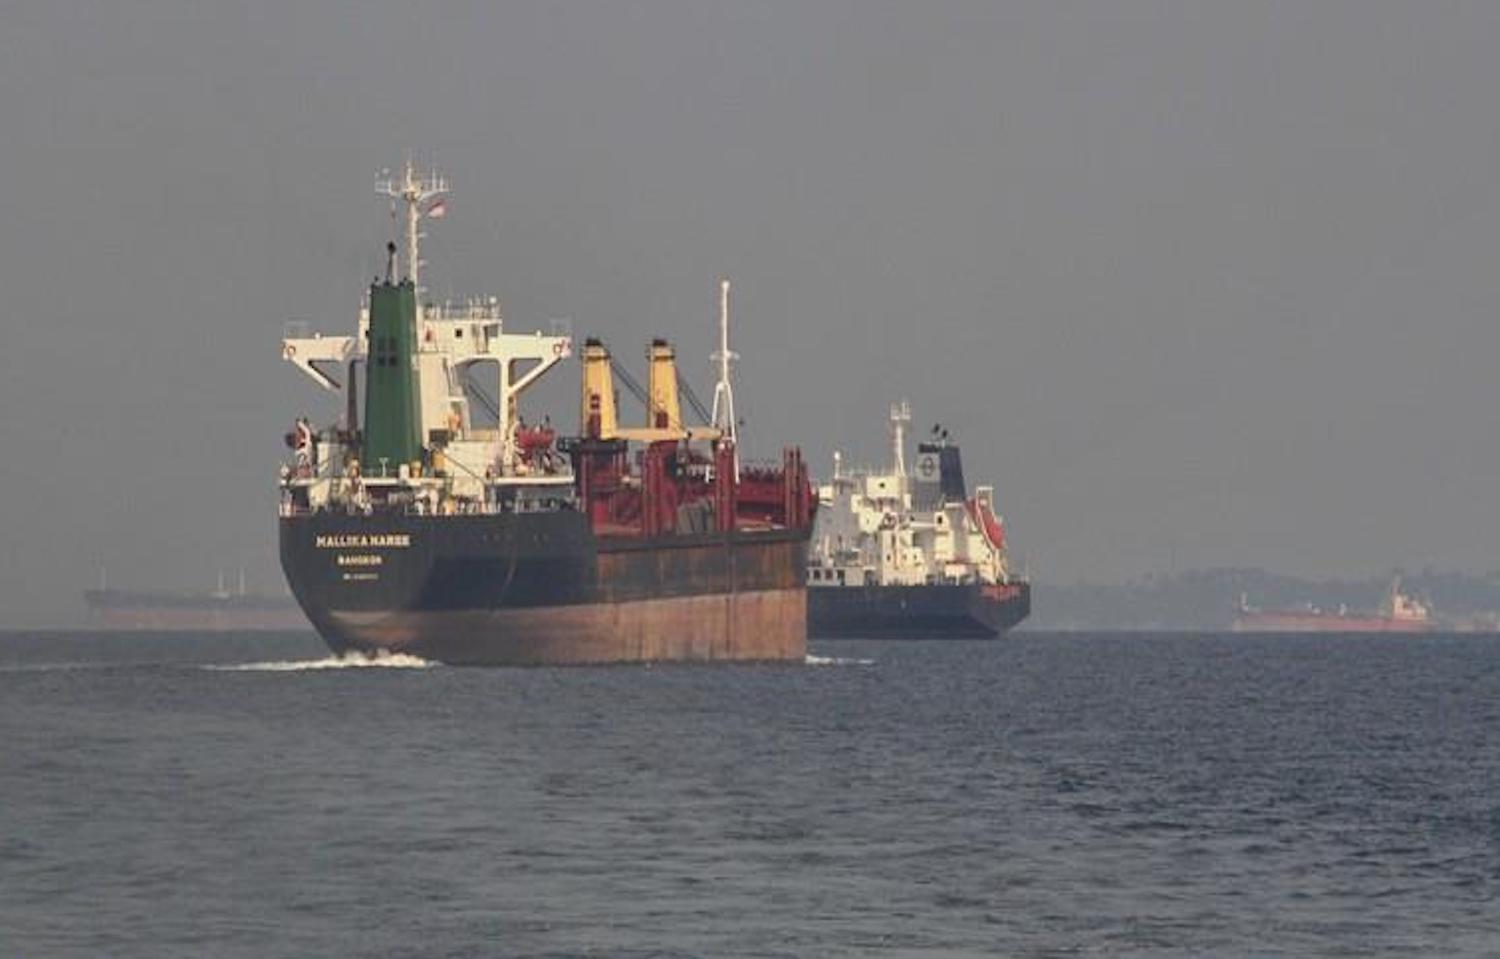 Φορτηγό πλοίο  βυθίστηκε στον Ειρηνικό, σώθηκαν τα 22 μέλη του πληρώματος - e-Nautilia.gr | Το Ελληνικό Portal για την Ναυτιλία. Τελευταία νέα, άρθρα, Οπτικοακουστικό Υλικό